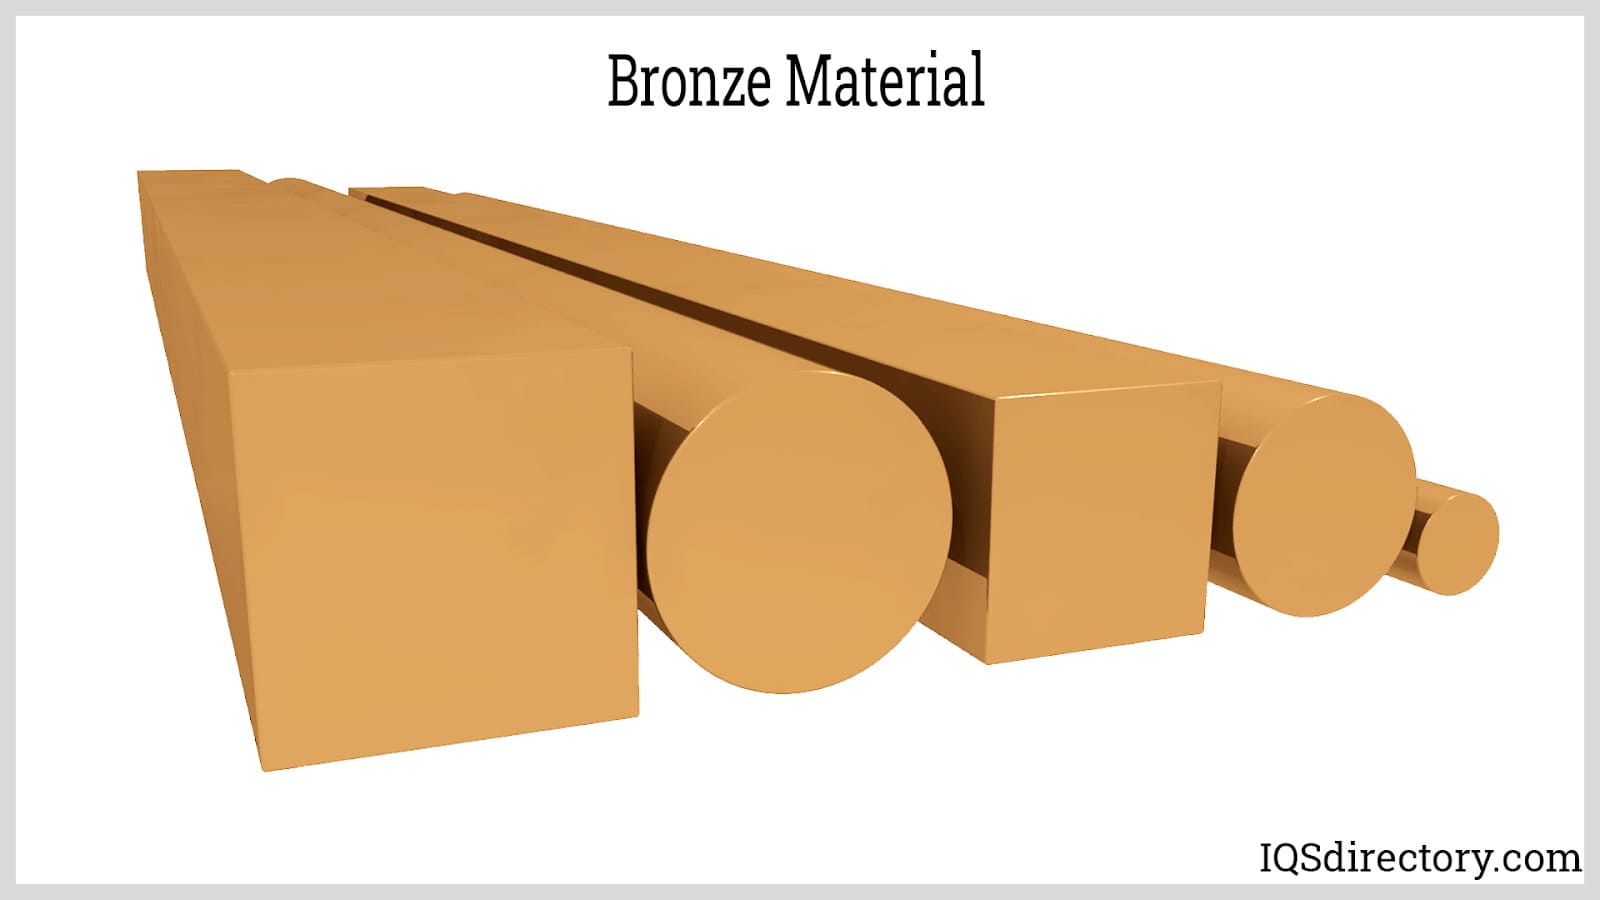 Bronze Material